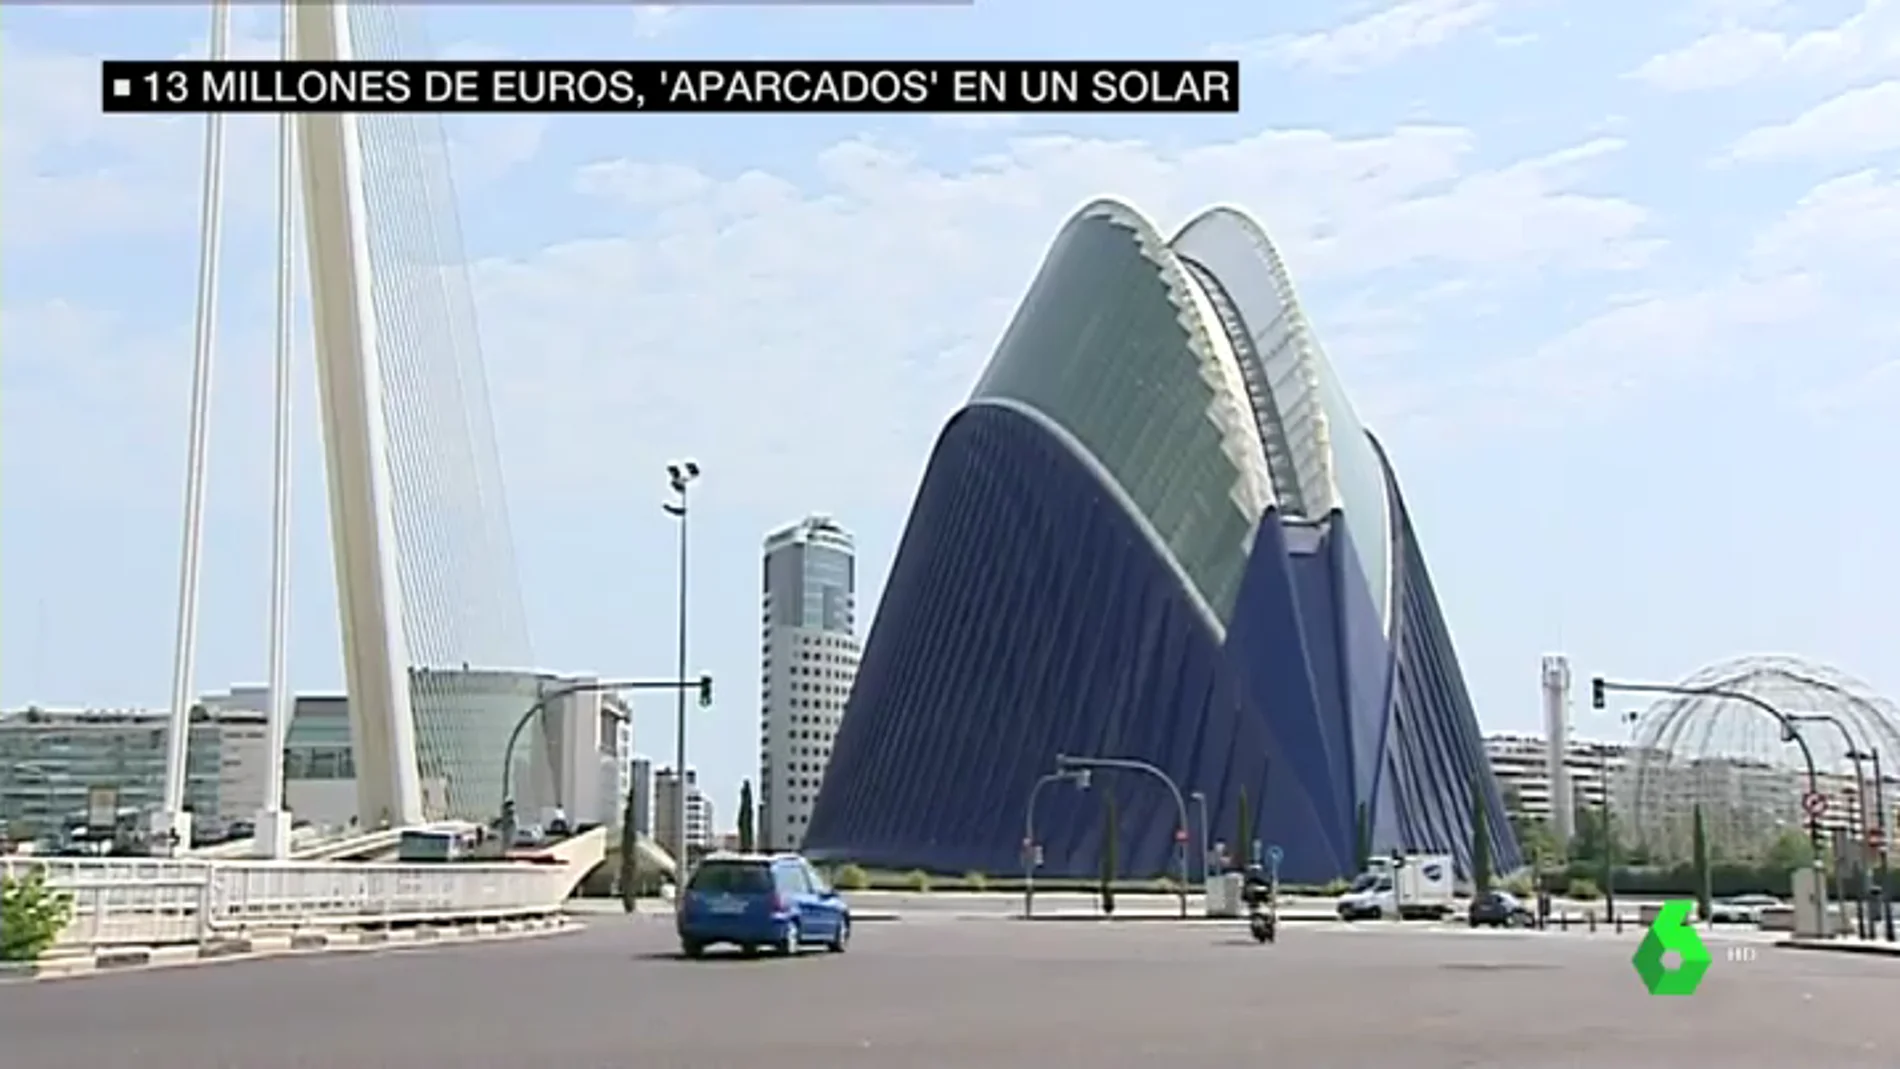 Así son las lamas de 13 millones de euros que diseñaron para la Ciudad de las Artes y las Ciencias y se aparcaron en un solar